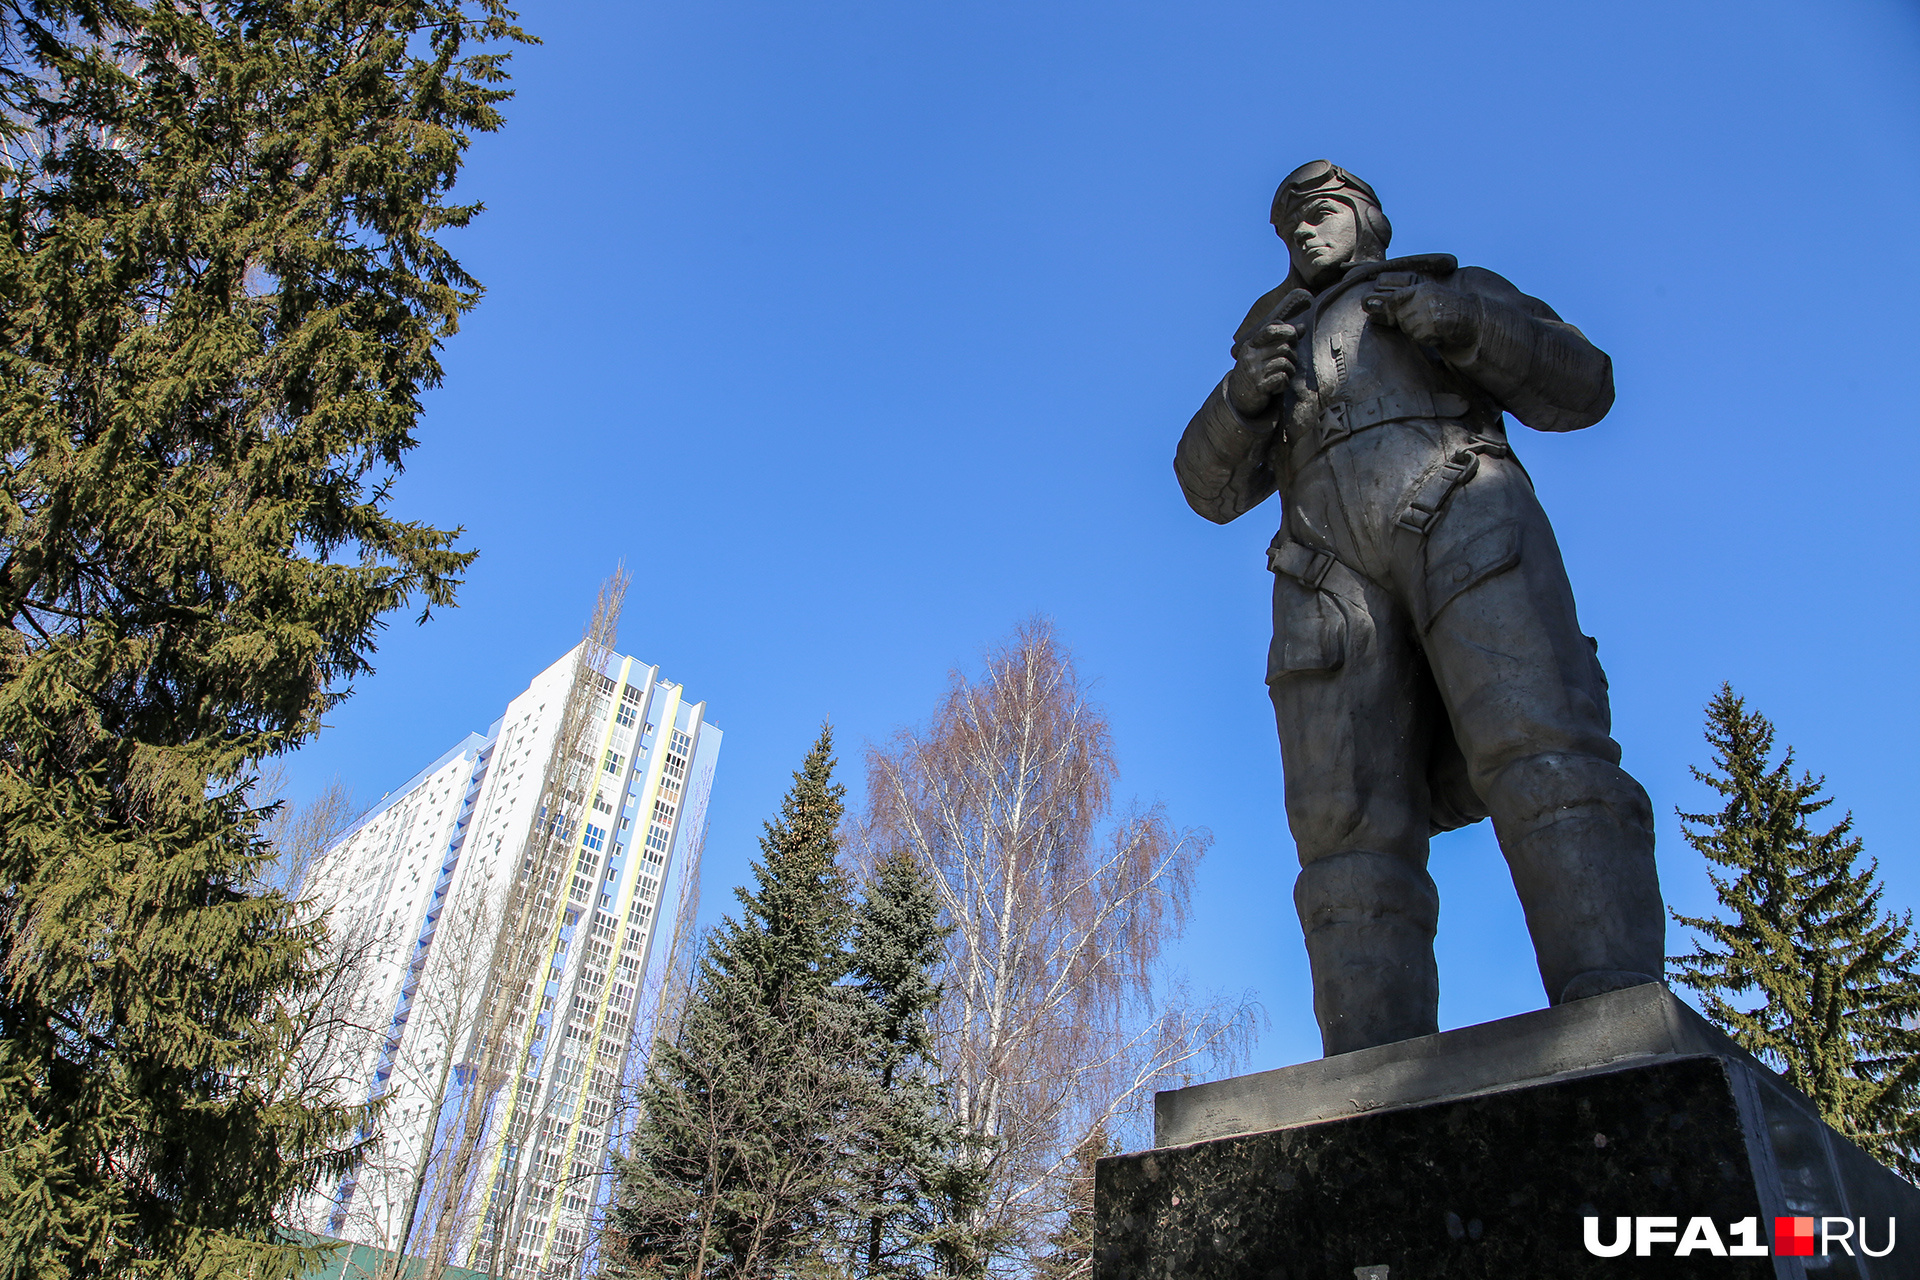 Памятник герою Советского Союза Николаю Гастелло стоит в небольшом сквере среди грязи и сугробов